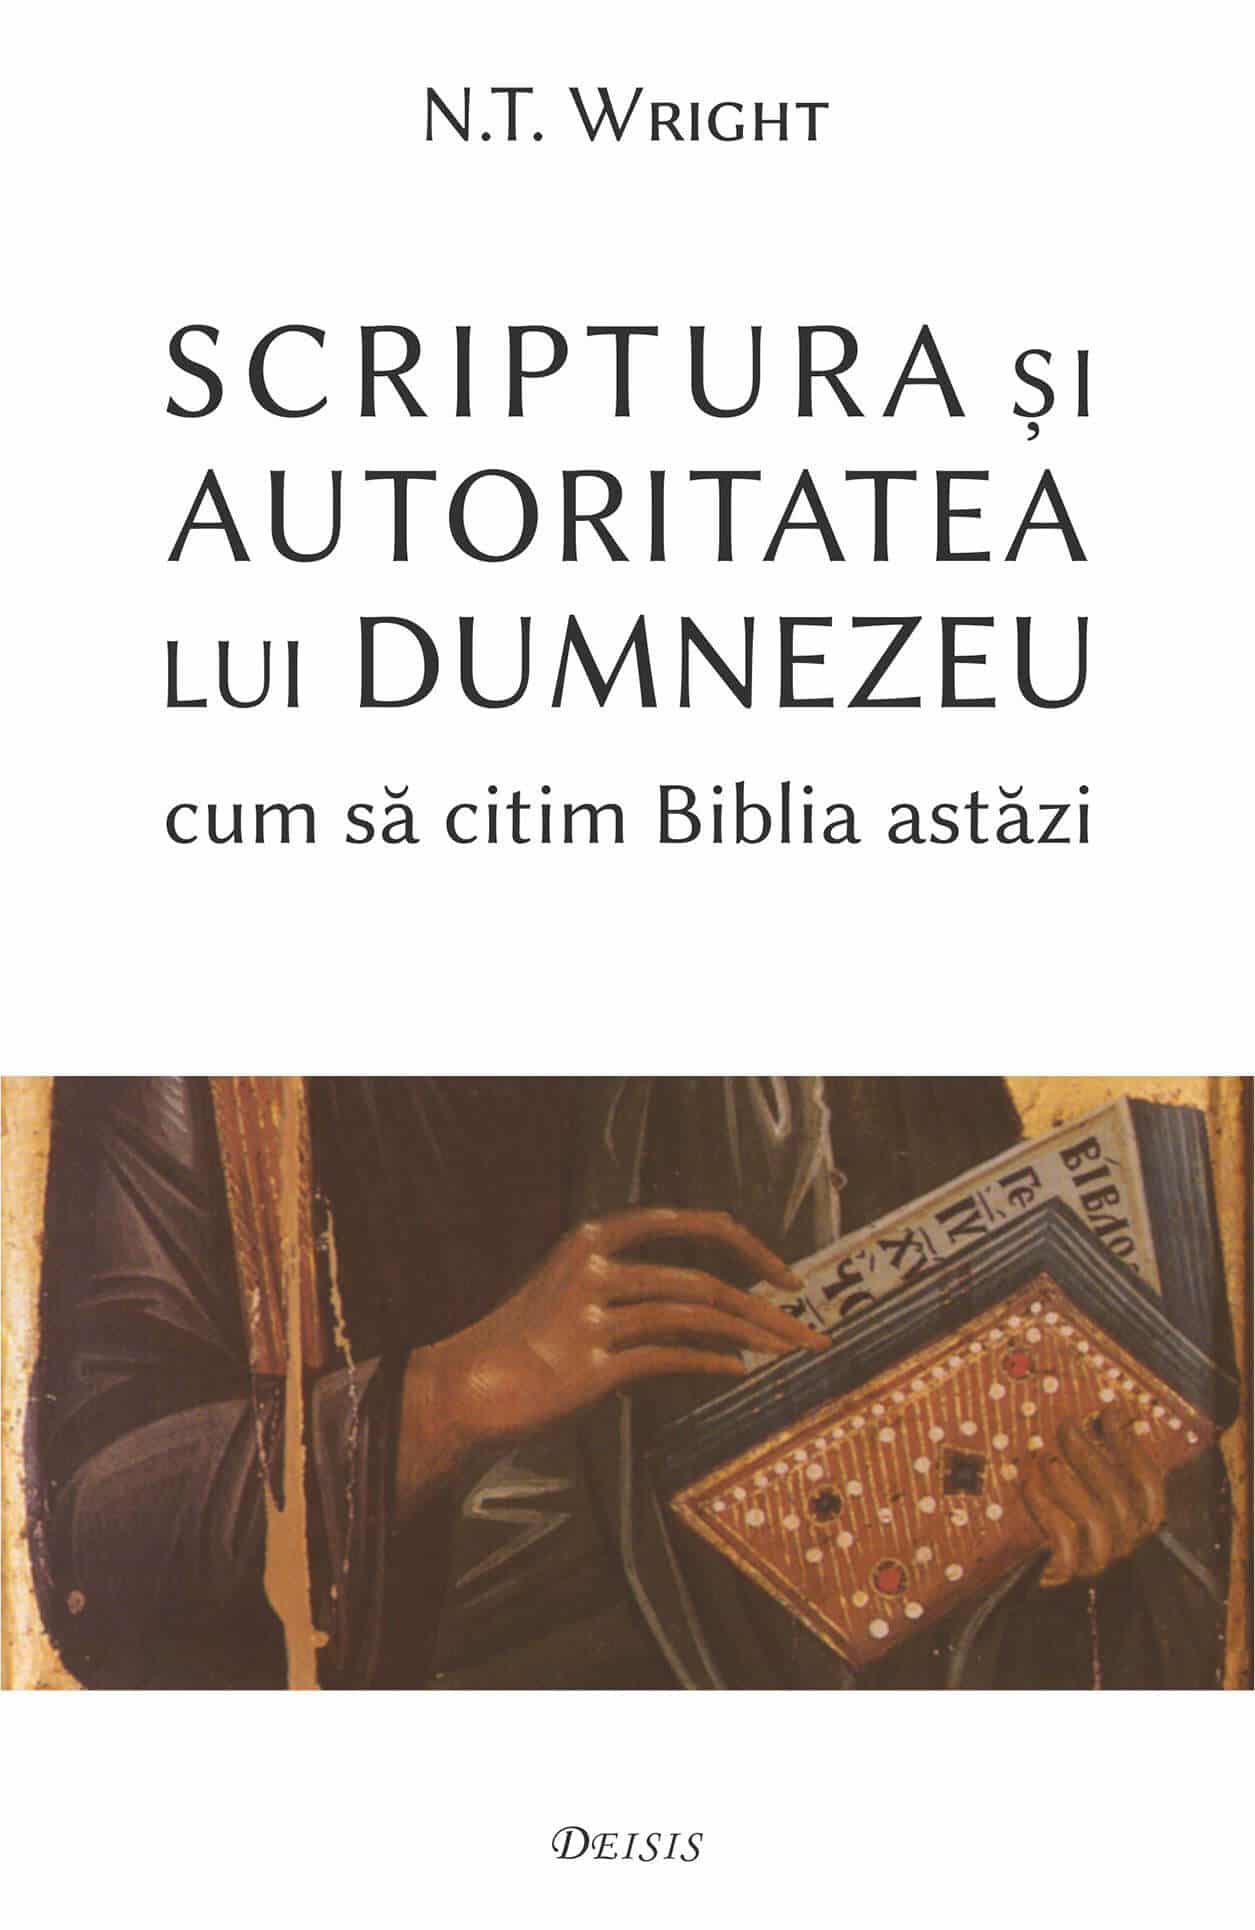 advantageous Decoration lonely Scriptura și autoritatea lui Dumnezeu — cum să citim Biblia astăzi -  Editura Deisis